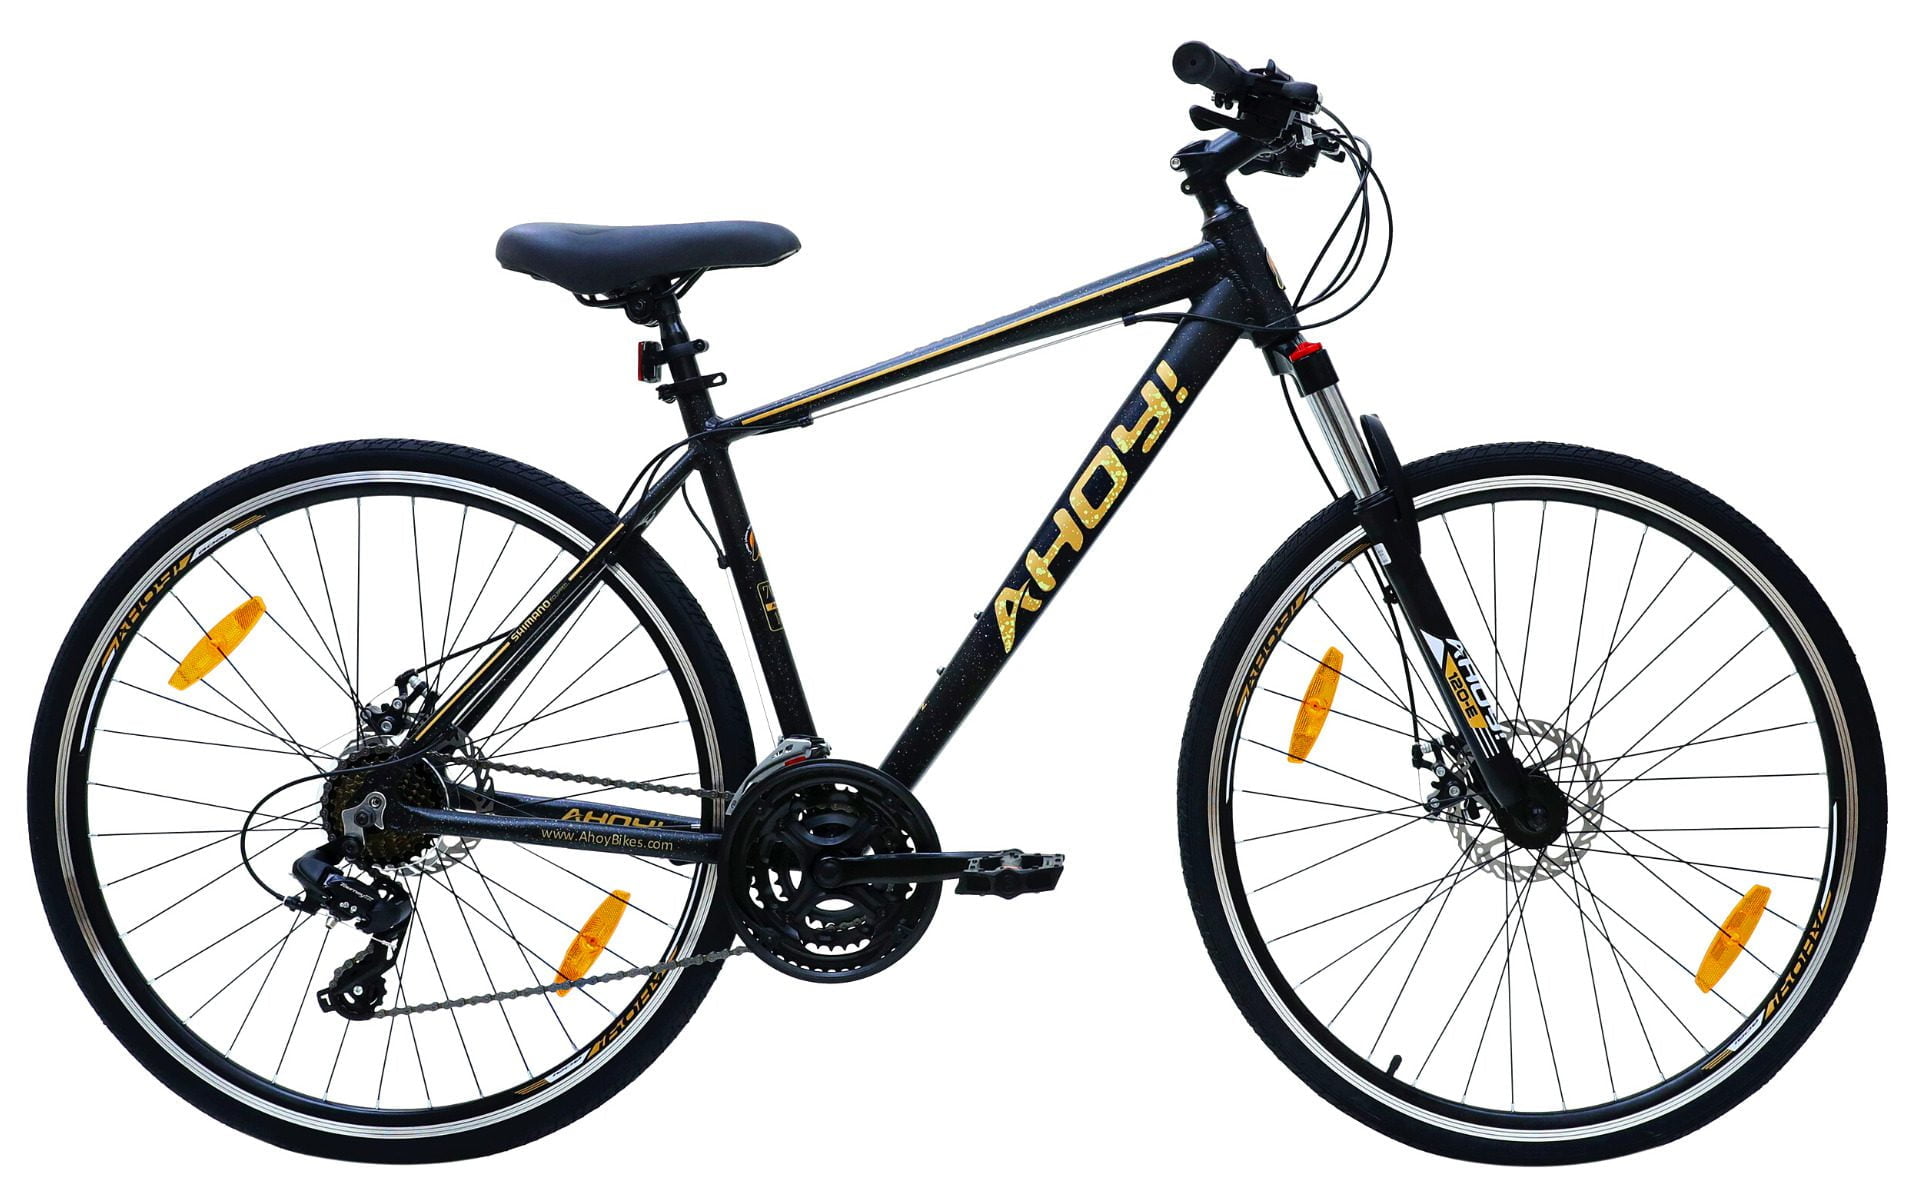 Comet Hybrid Cycle | Buy Black Gear Bicycle for Men Online